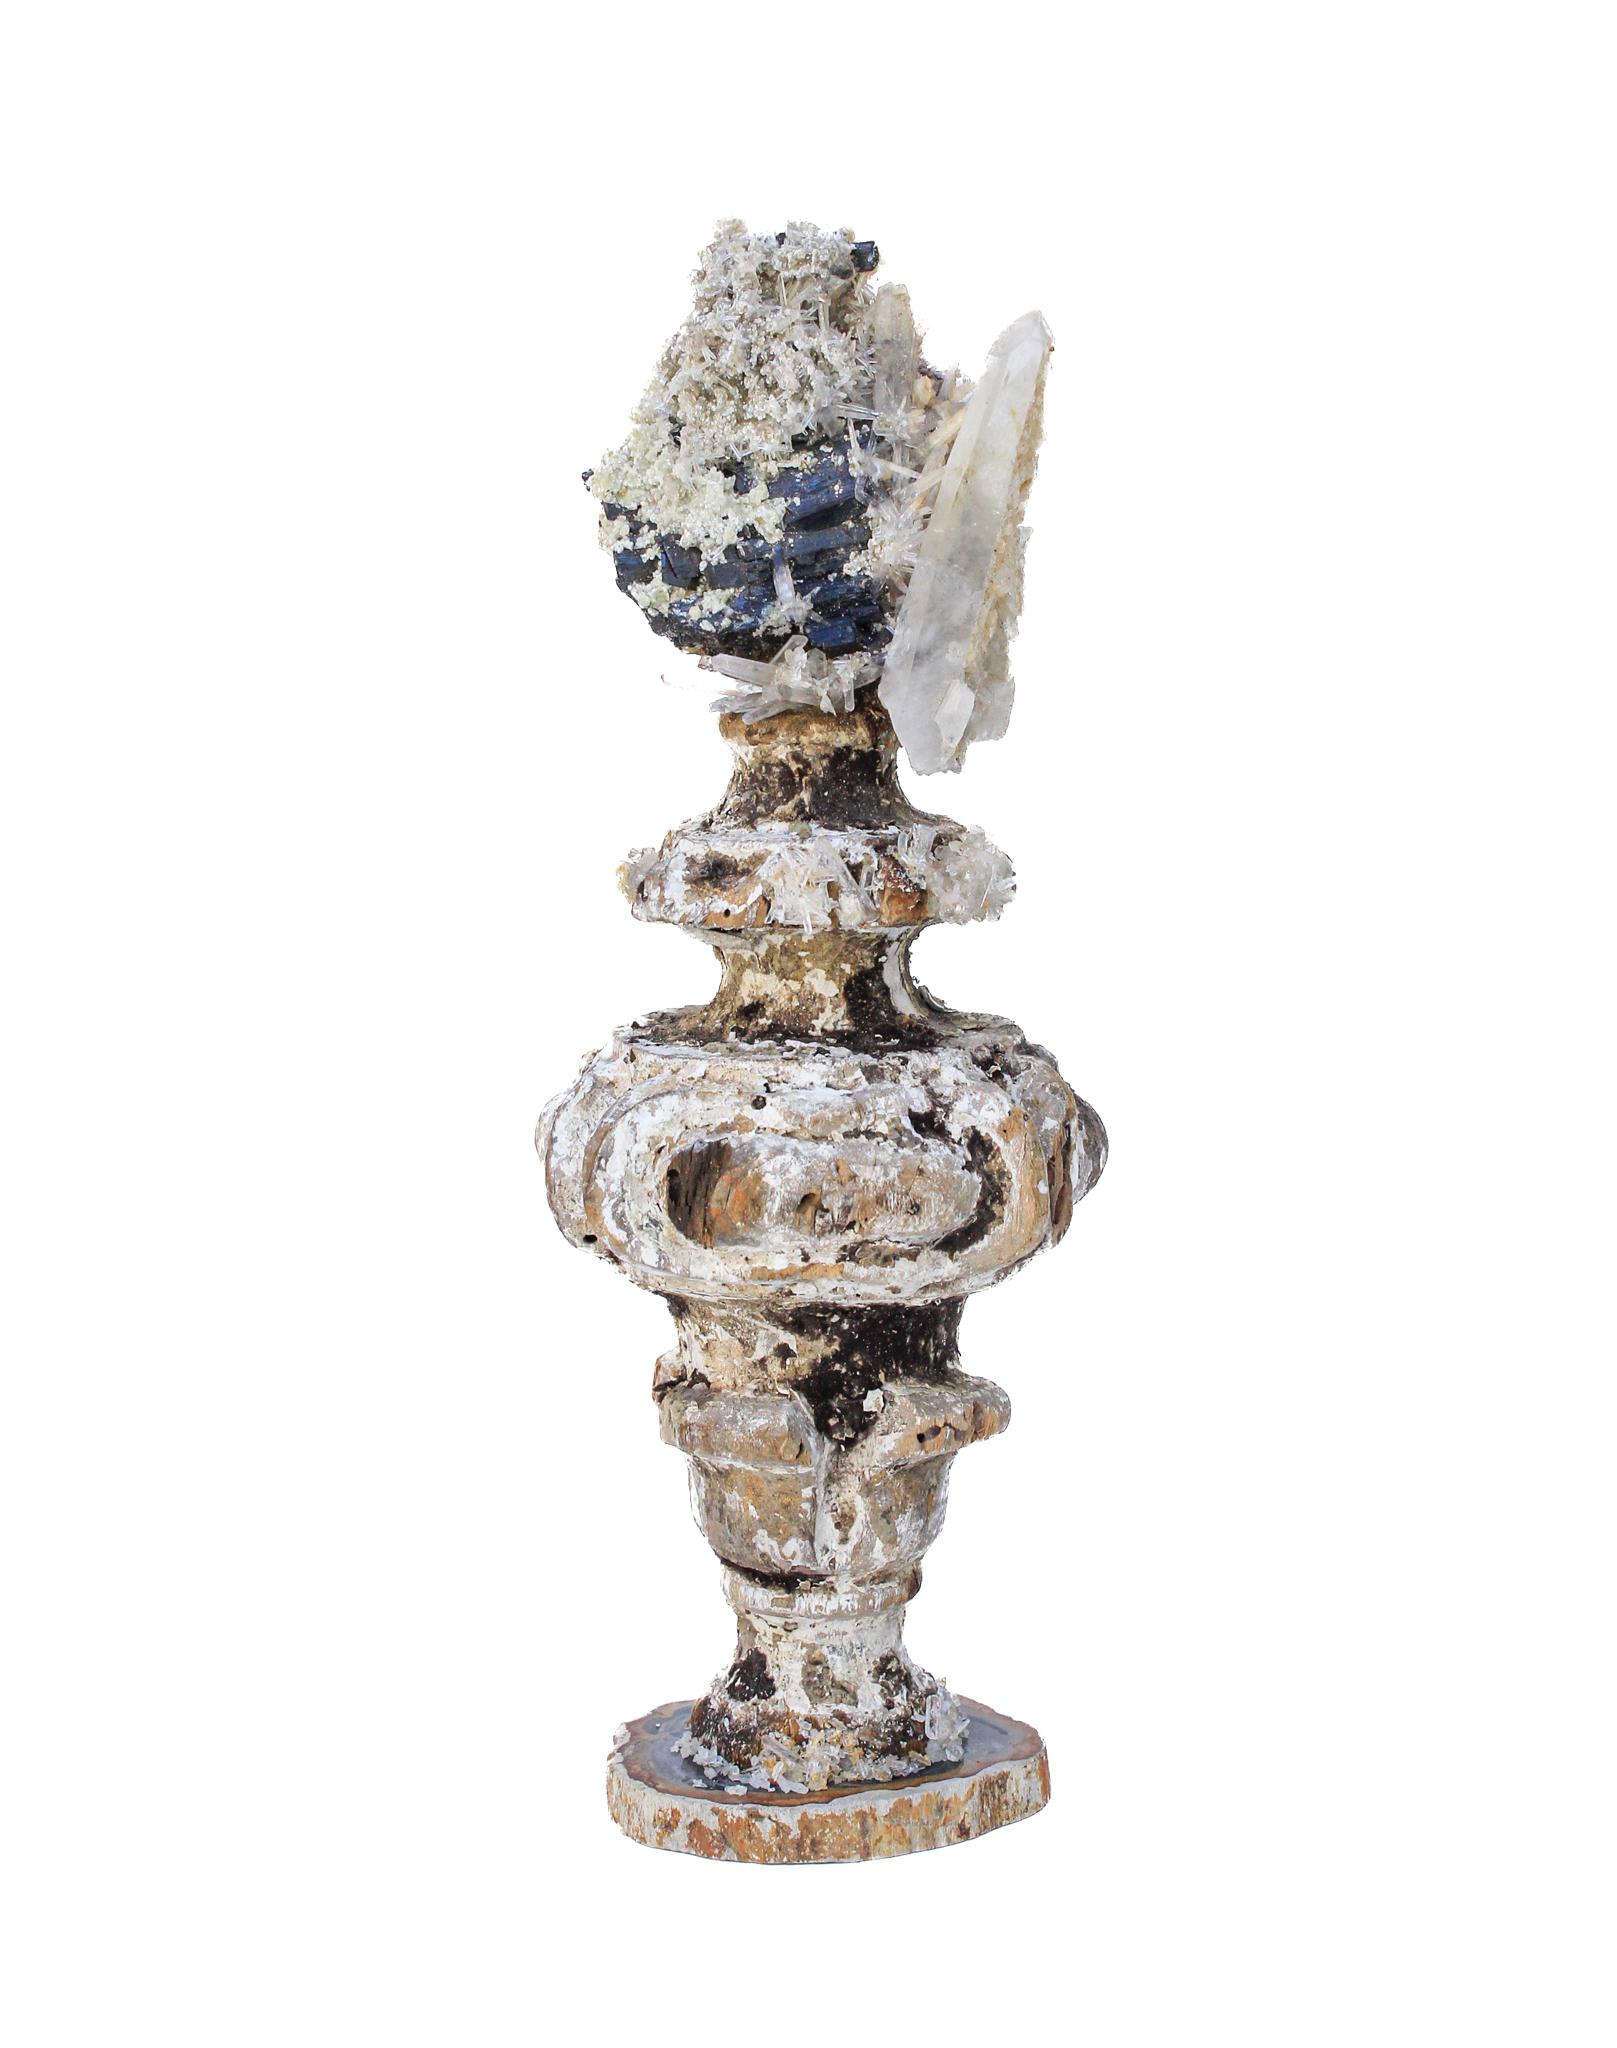 vase italien du XVIIe siècle avec tourmaline noire et cristaux sur une base en bois pétrifié

Ce fragment provient d'une église de Florence. Il a été trouvé et sauvé de l'inondation historique de la rivière Arno en 1966.

La pièce a été